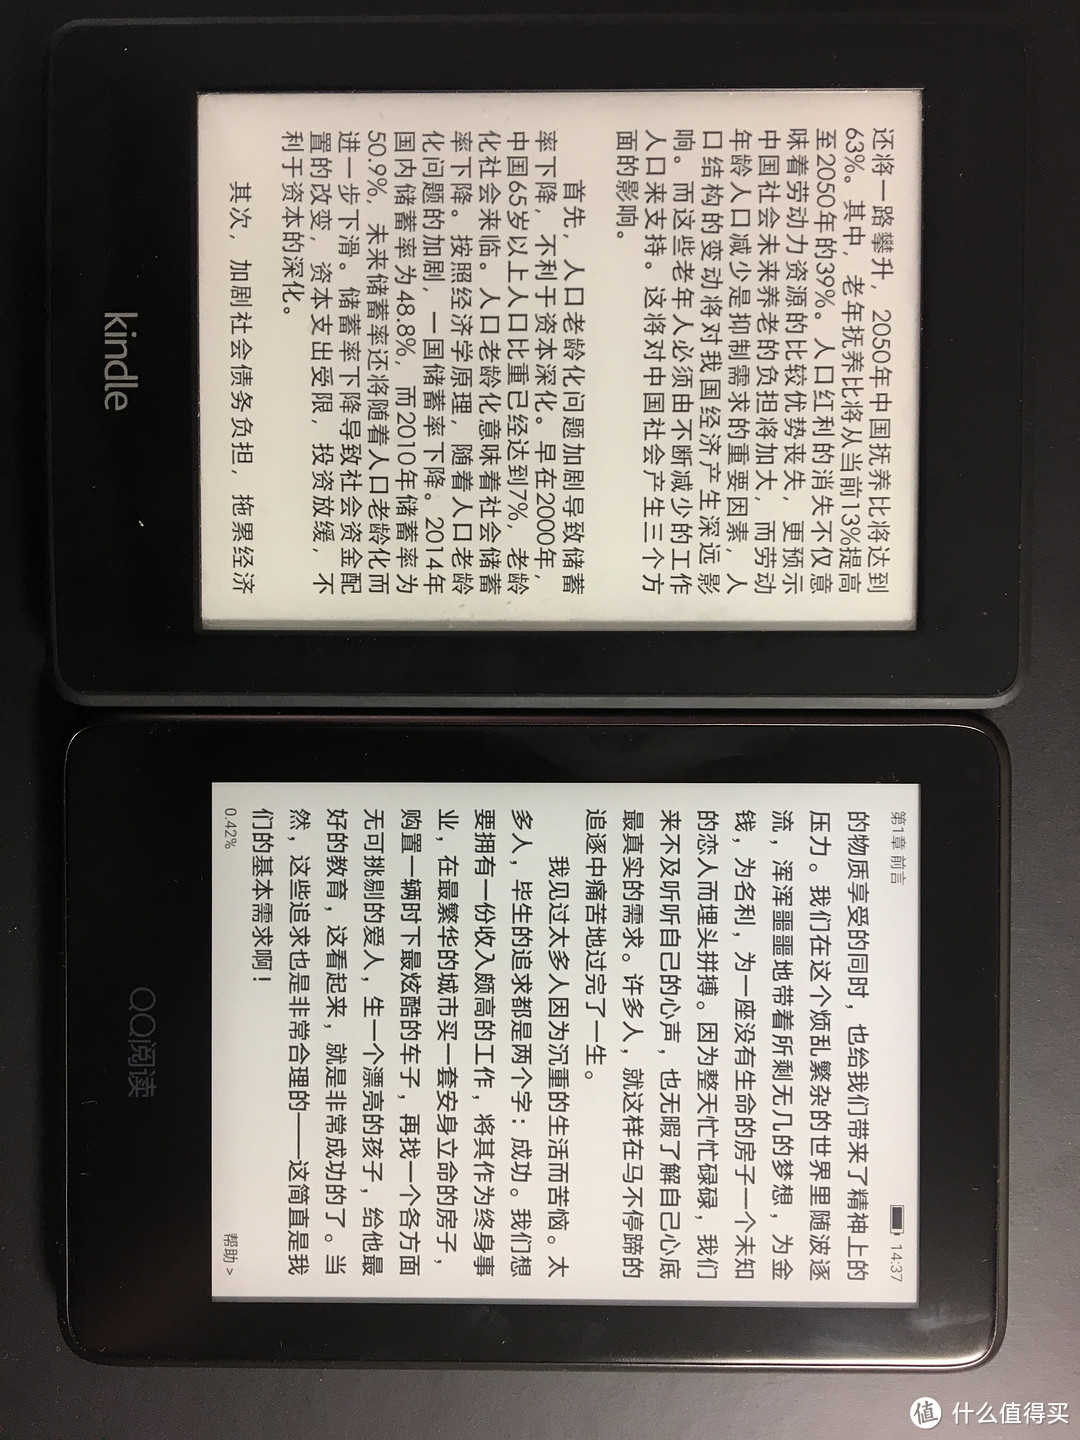 腾讯帝国QQ阅读横空出世，下定战书——QQ阅读器评测报告